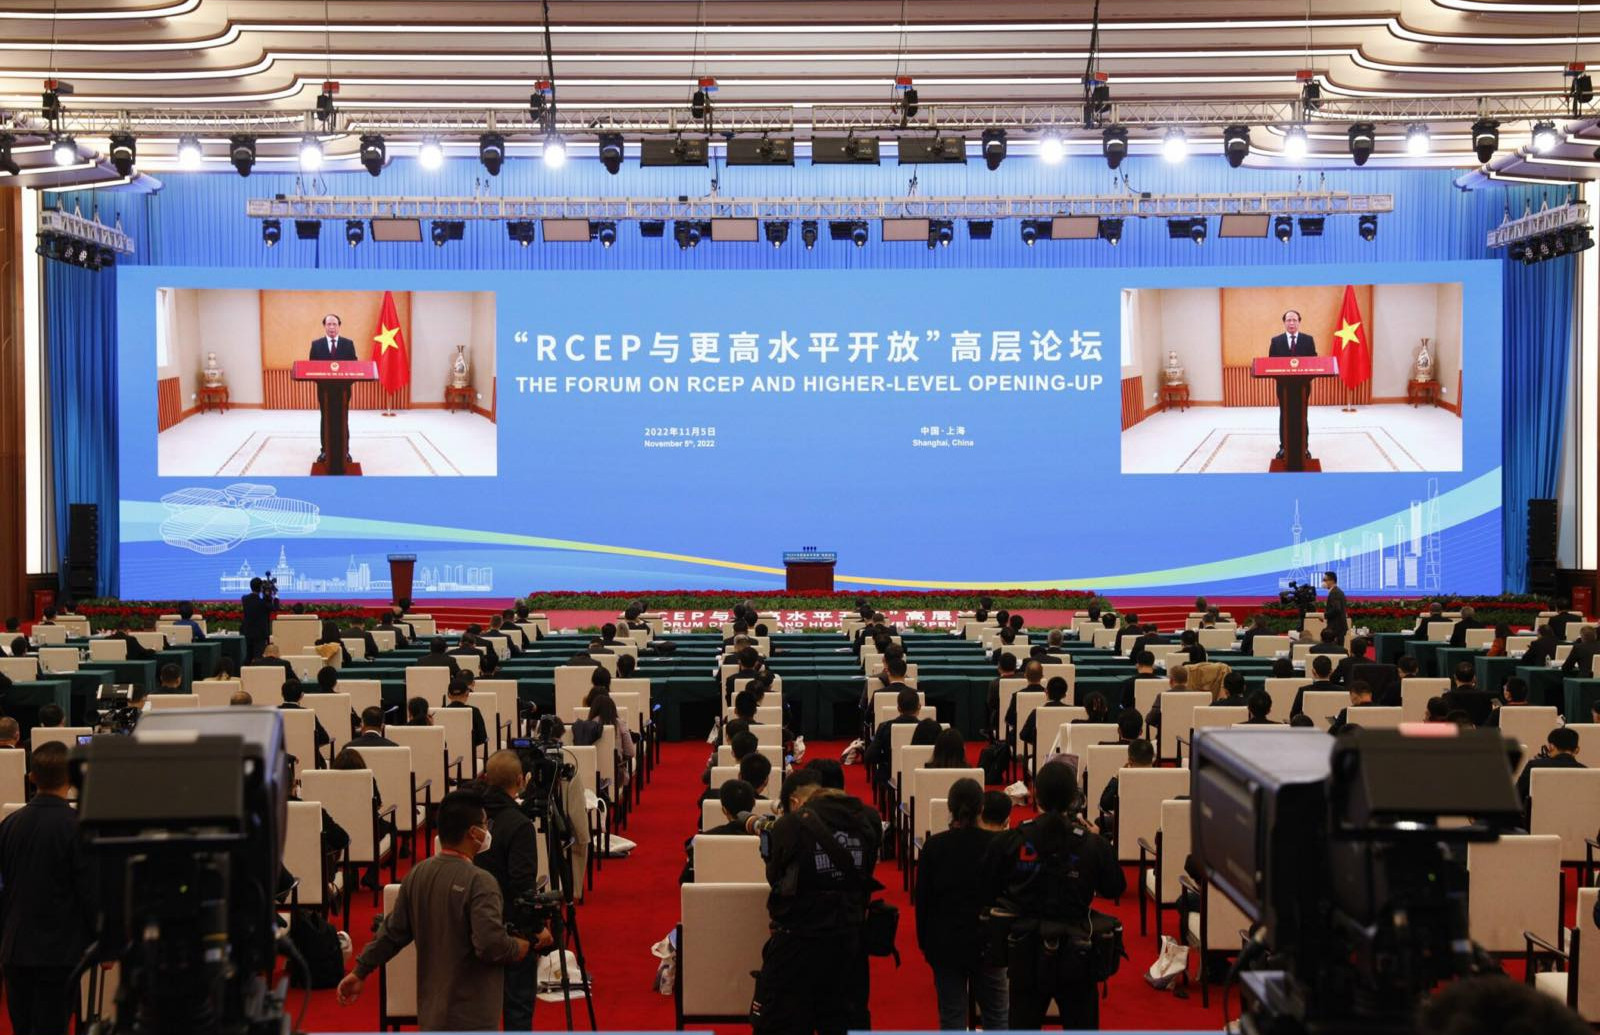 Phó Thủ tướng Chính phủ Lê Văn Thành dự và phát biểu tại Diễn đàn cấp cao “RCEP và mở cửa với trình độ cao hơn” trong khuôn khổ Hội chợ Nhập khẩu quốc tế Trung Quốc (CIIE) lần thứ 5 và Diễn đàn Kinh tế quốc tế Hồng Kiều